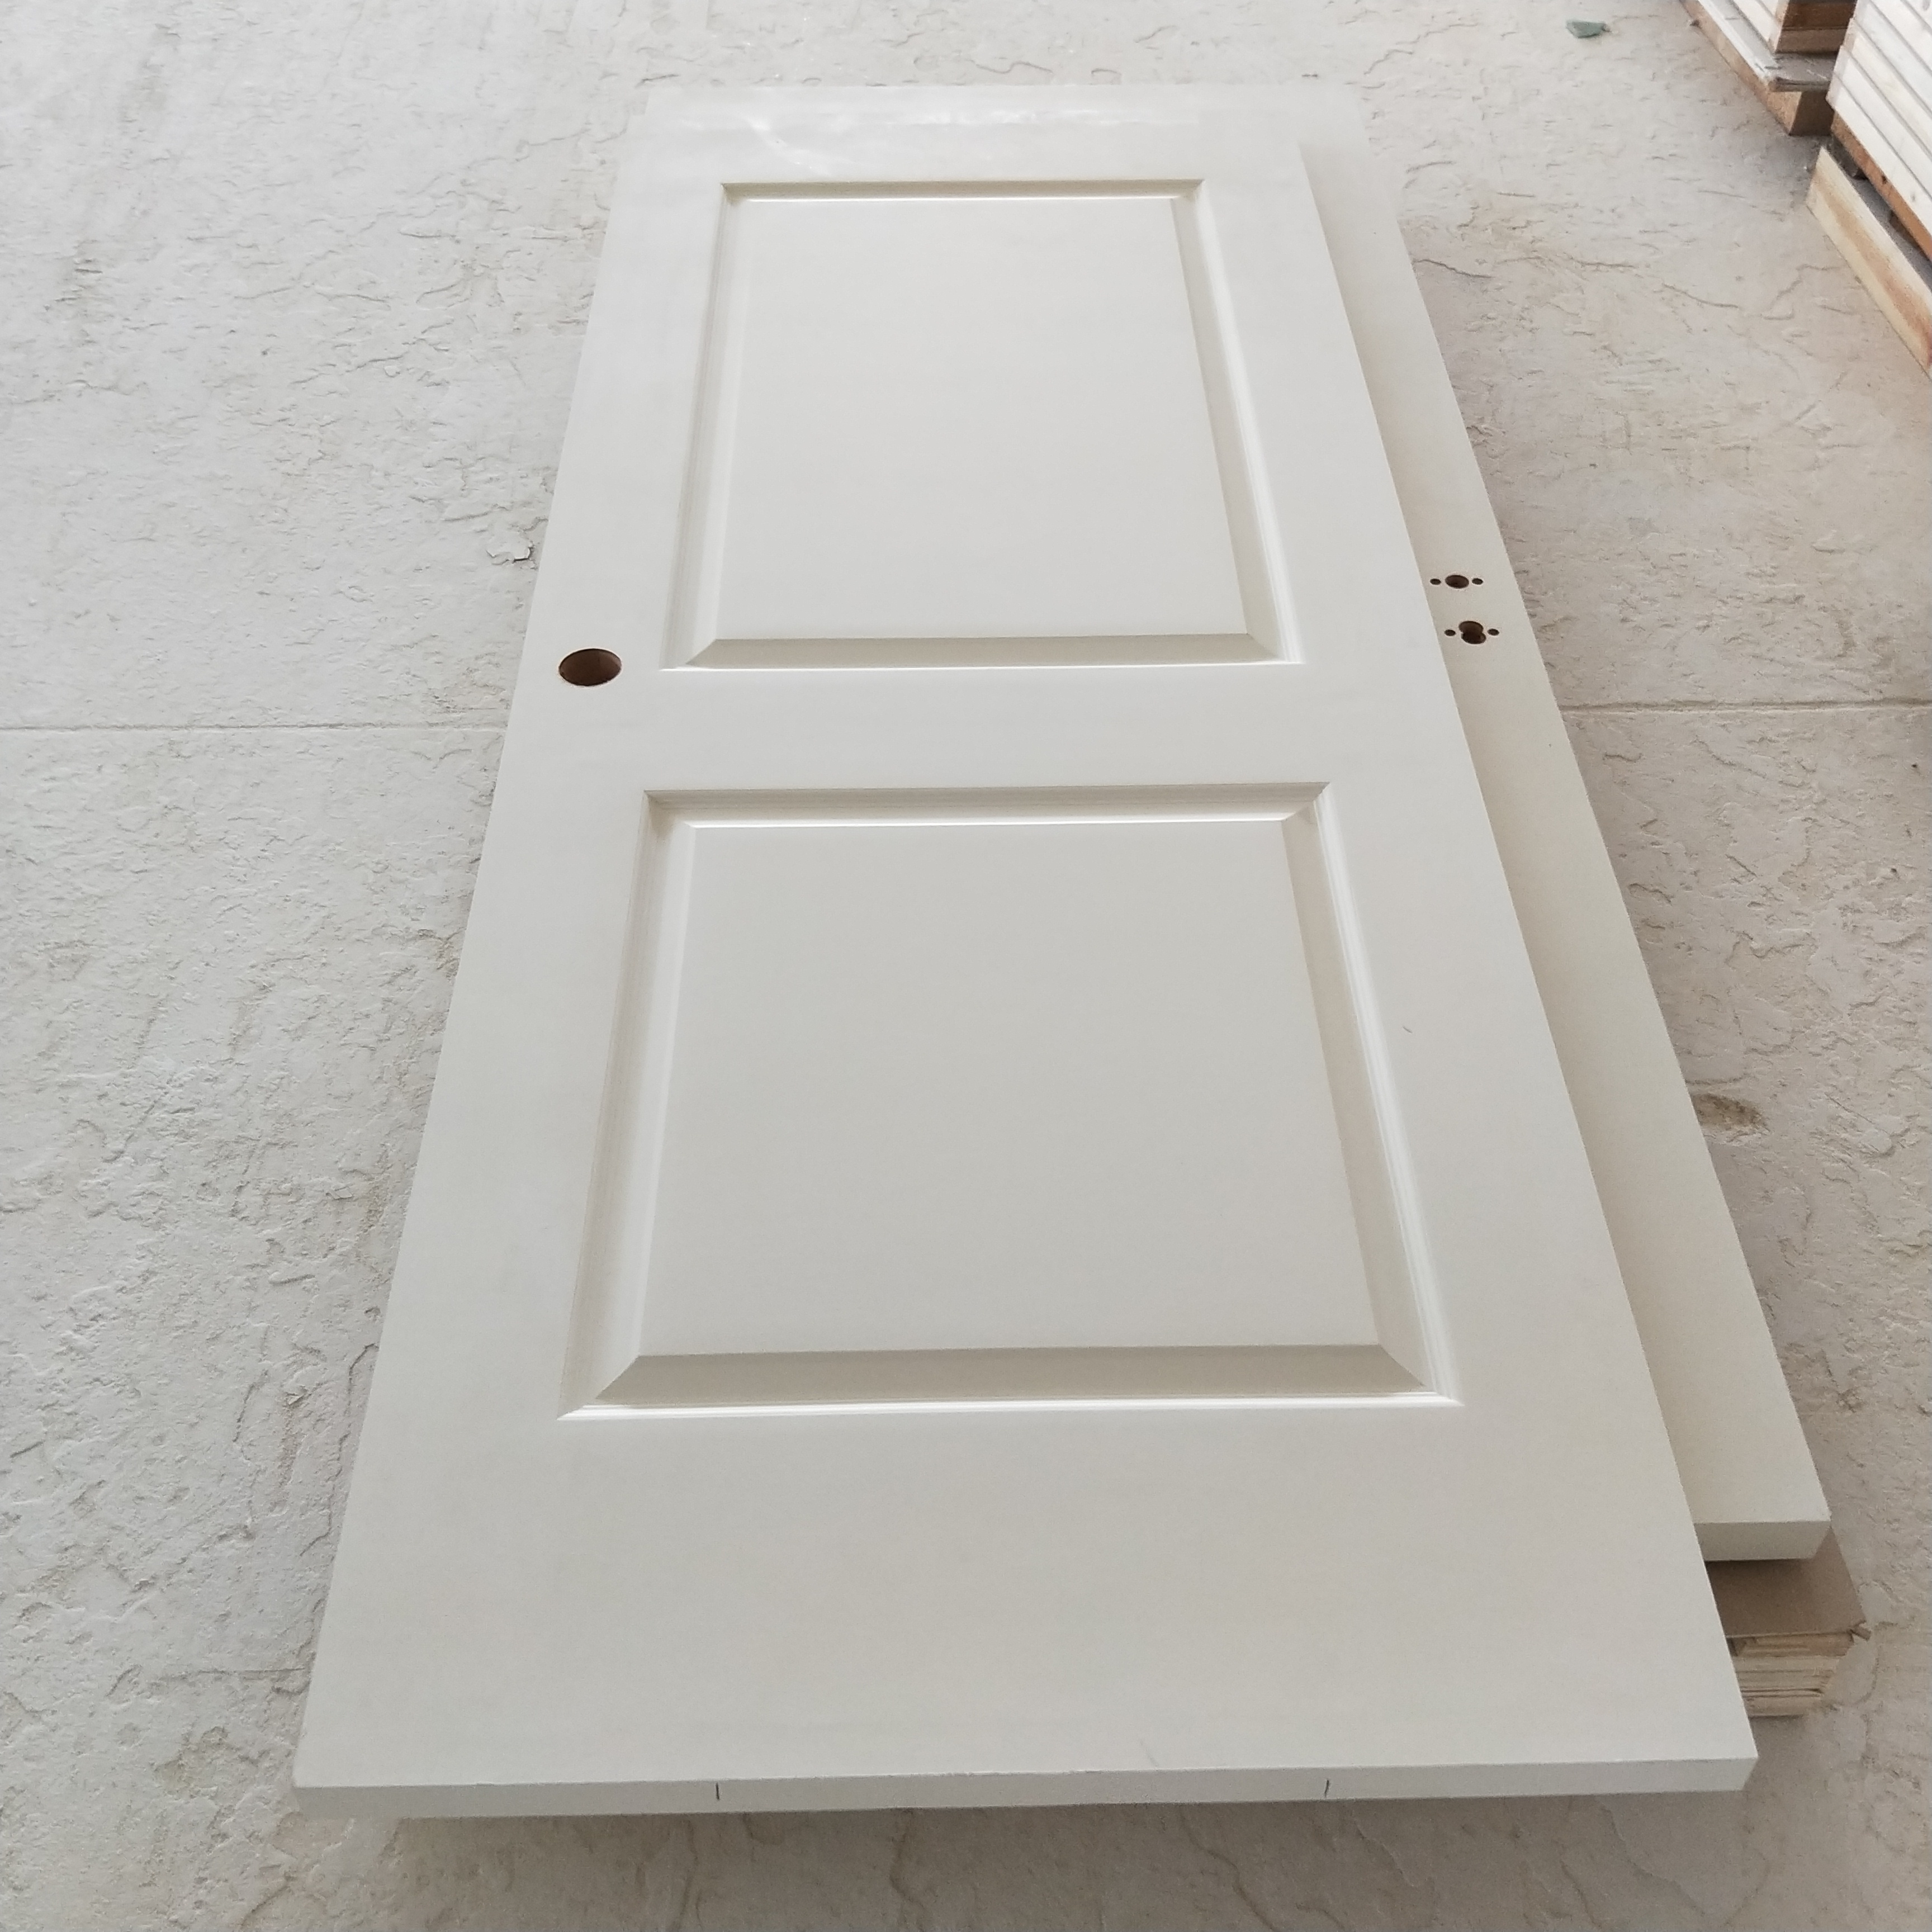 Prehung Hollow Core HDF Interior Door with Wood Texture for Room Door /Bathroom door